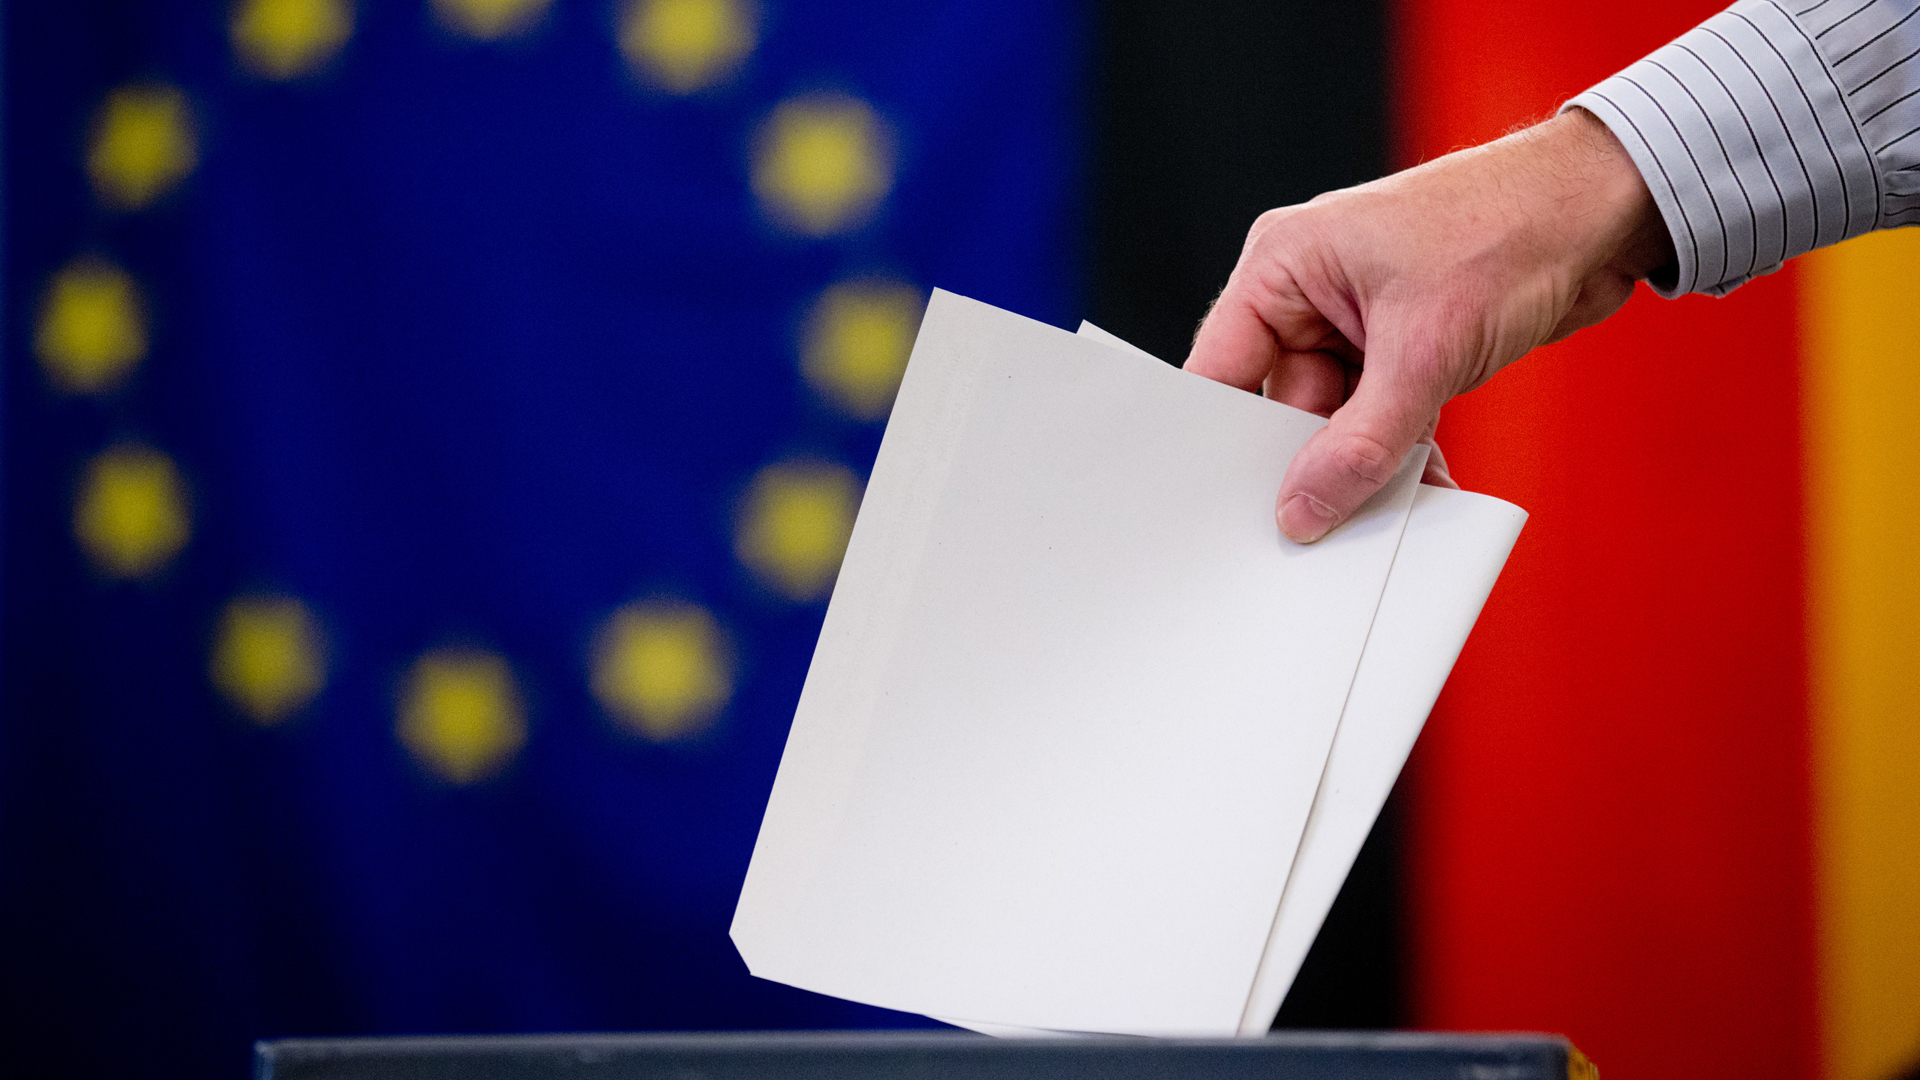 Hand wirft Stimmzettel in Wahlurne | picture alliance / dpa